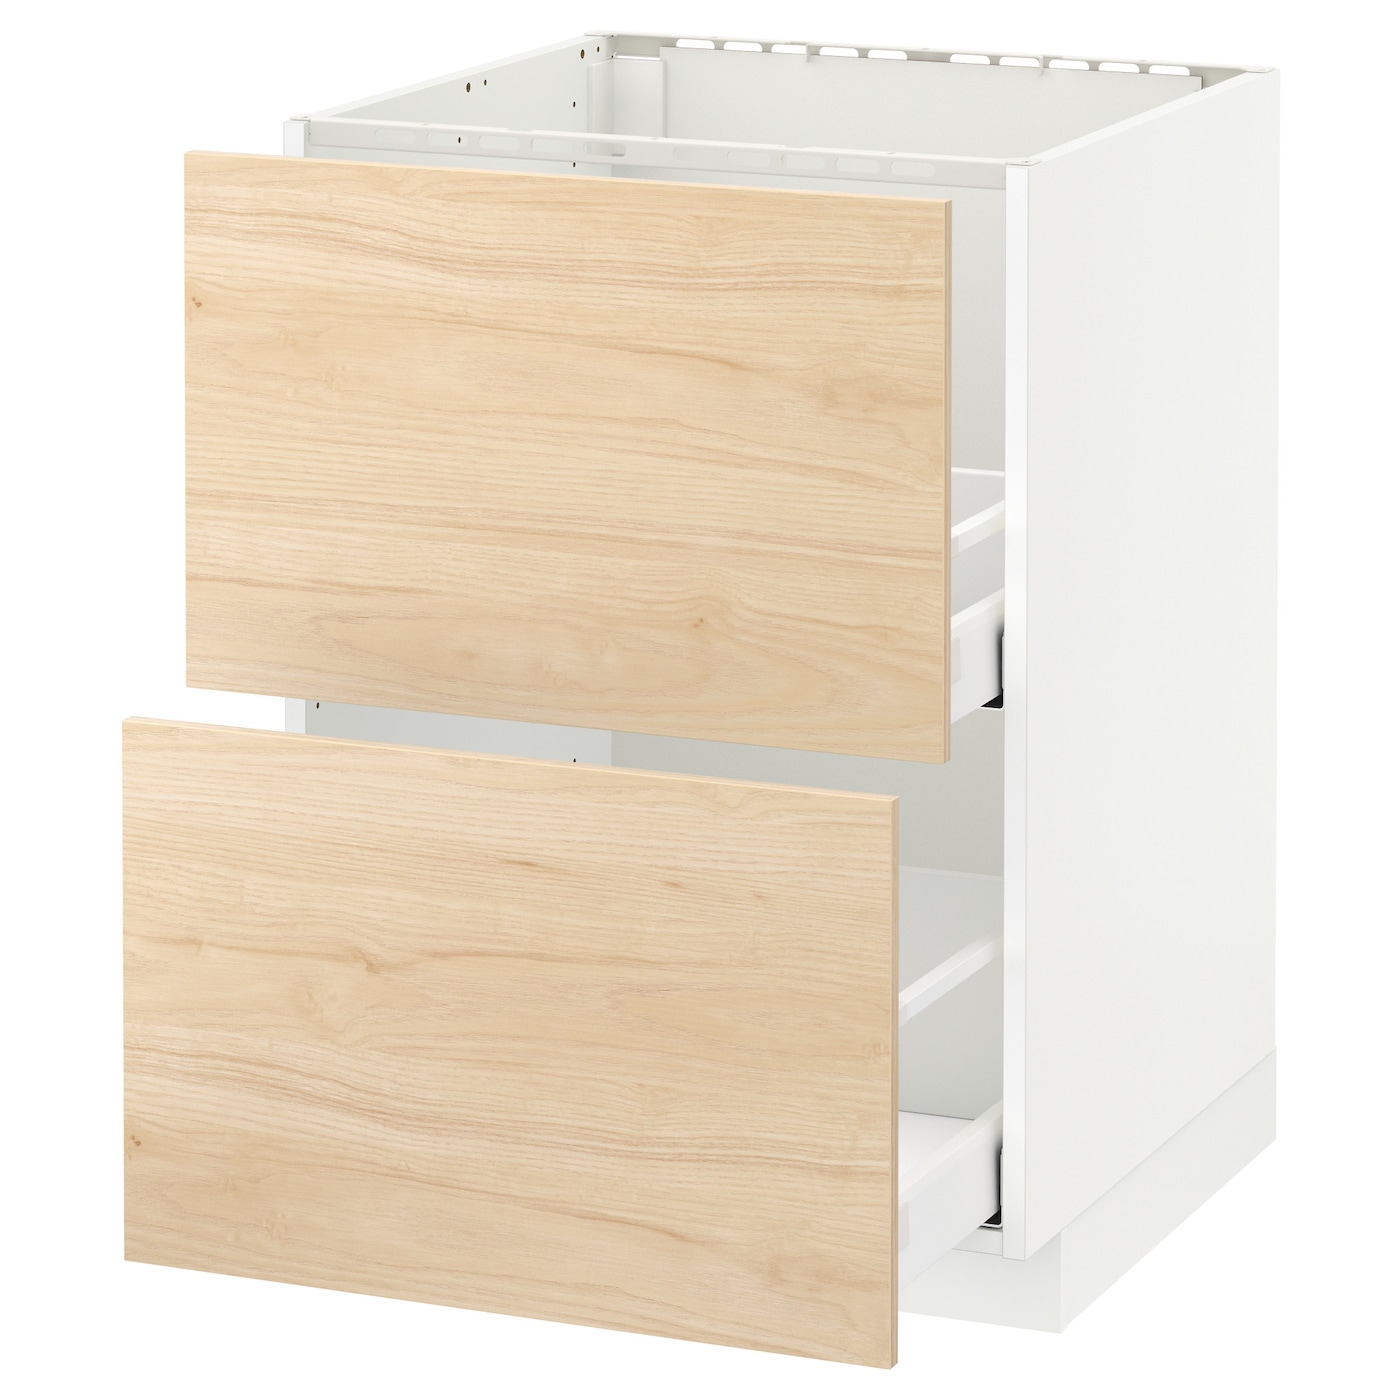 Напольный шкаф - METOD / MAXIMERA IKEA/ МЕТОД/ МАКСИМЕРА ИКЕА,  60х60 см, белый/ под беленый дуб